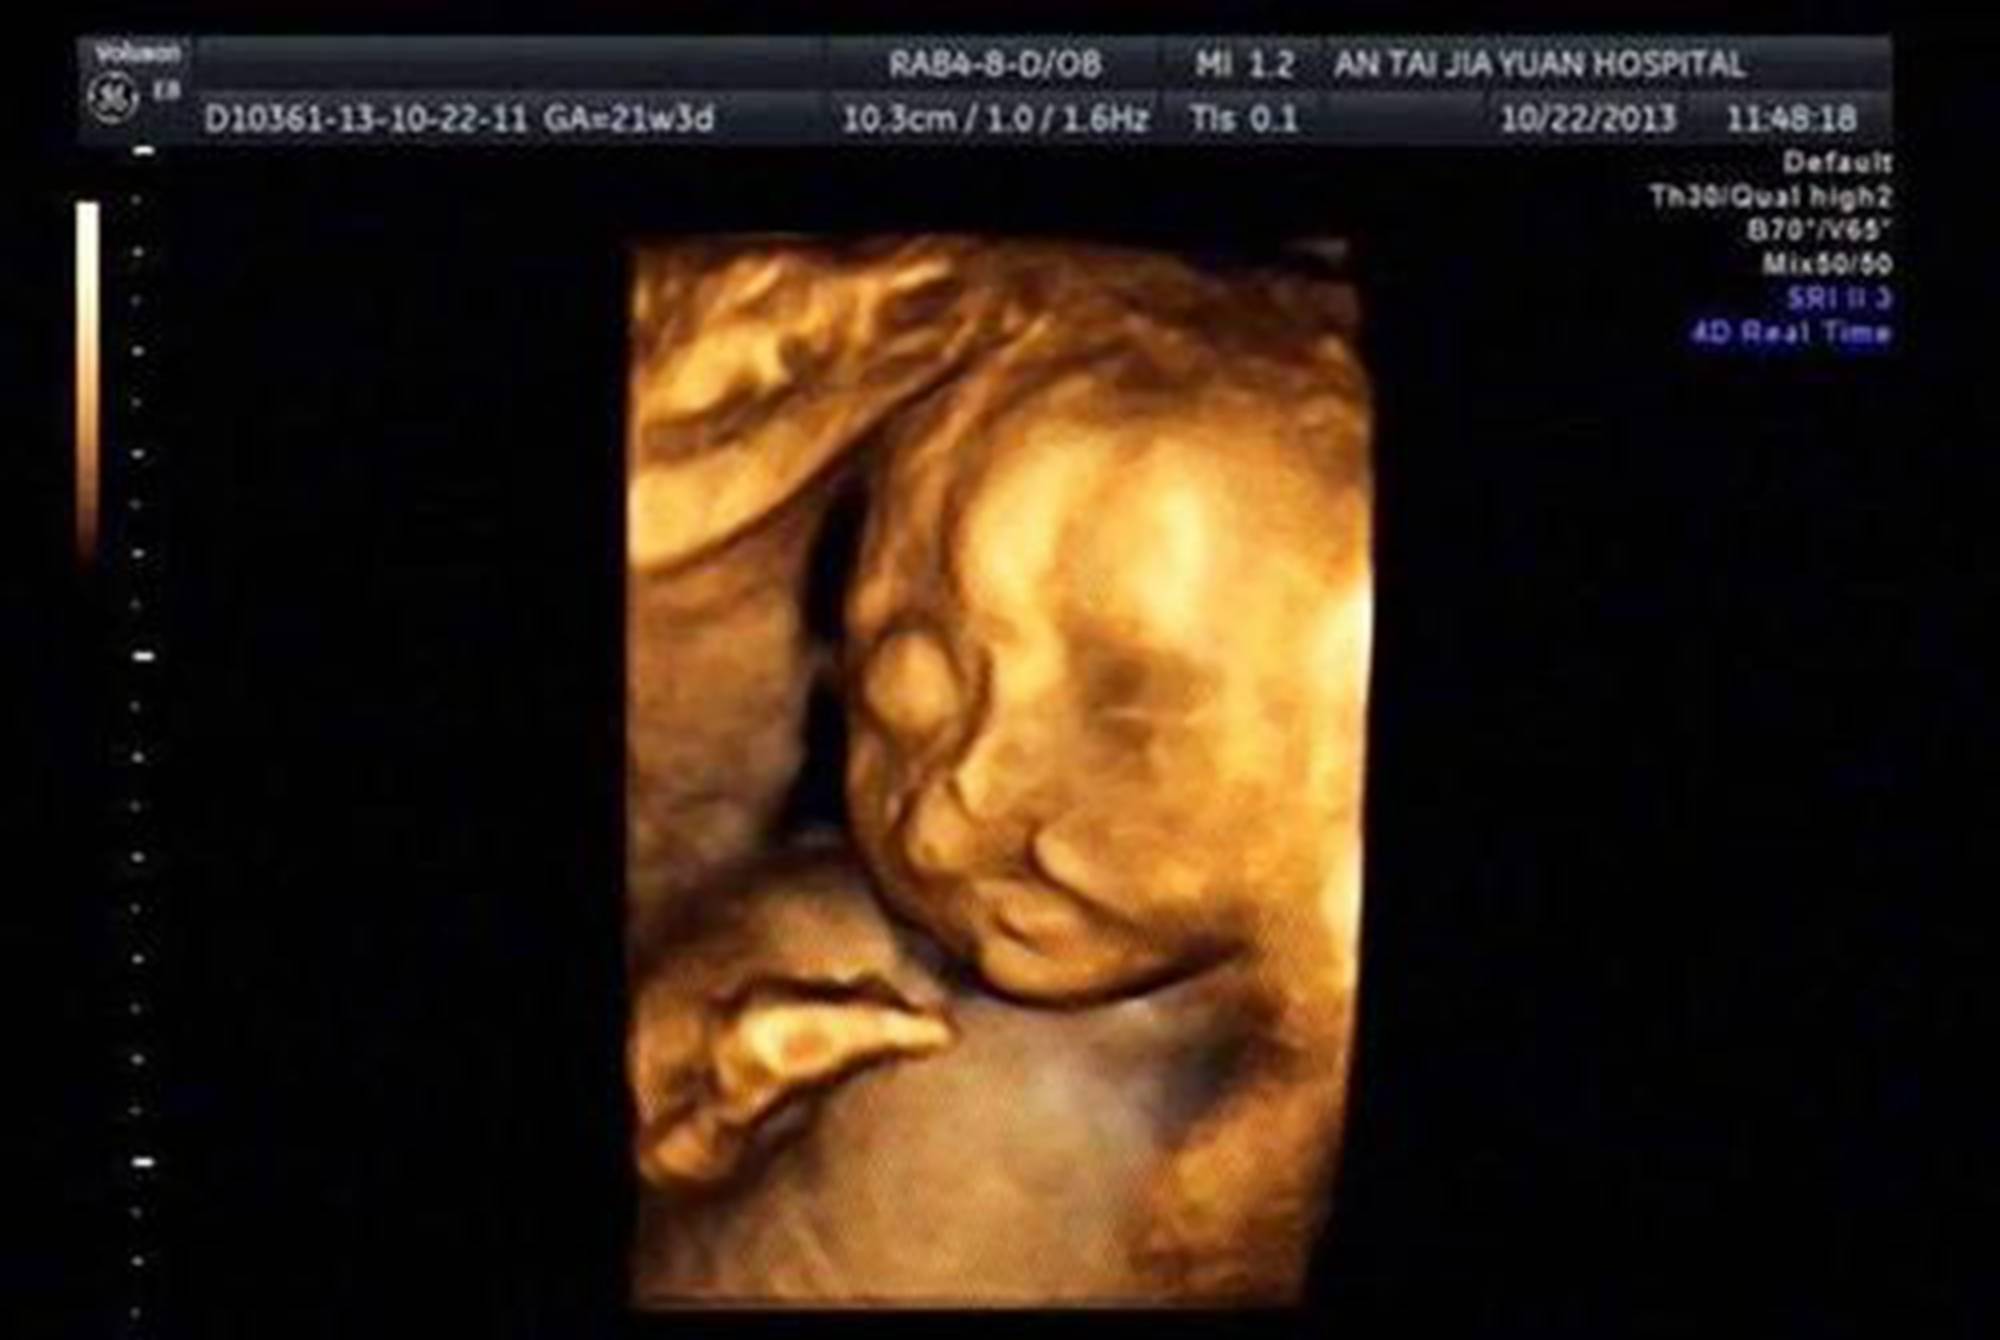 四维彩超时胎儿对着屏幕"吐泡泡,孕妈正高兴,医生却说不能留